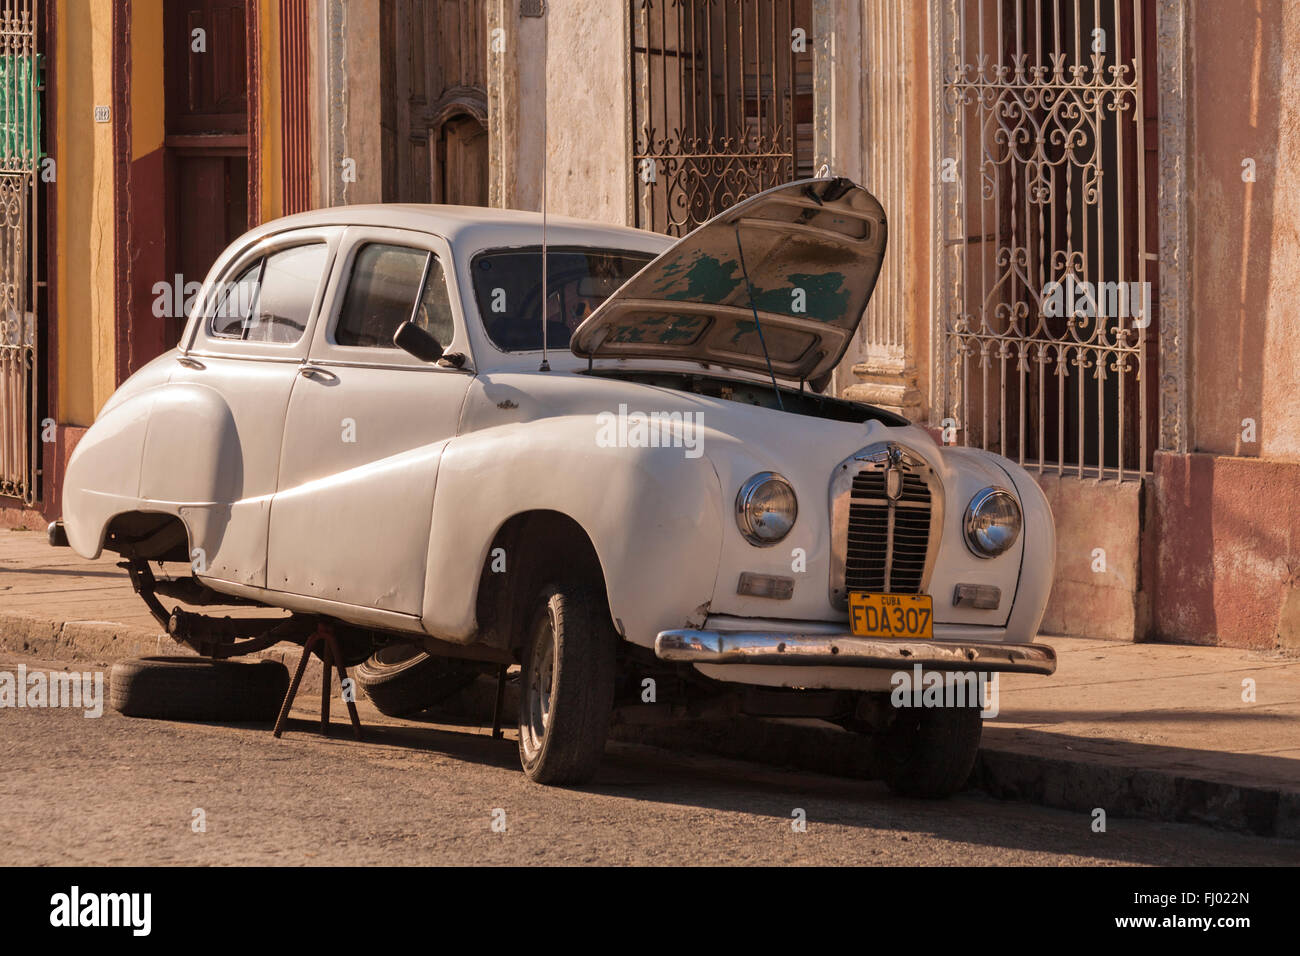 Vecchia auto sollevato con ruote posteriori rimossi e il cofano fino in strada a l'Avana, Cuba, West Indies, dei Caraibi e America centrale Foto Stock